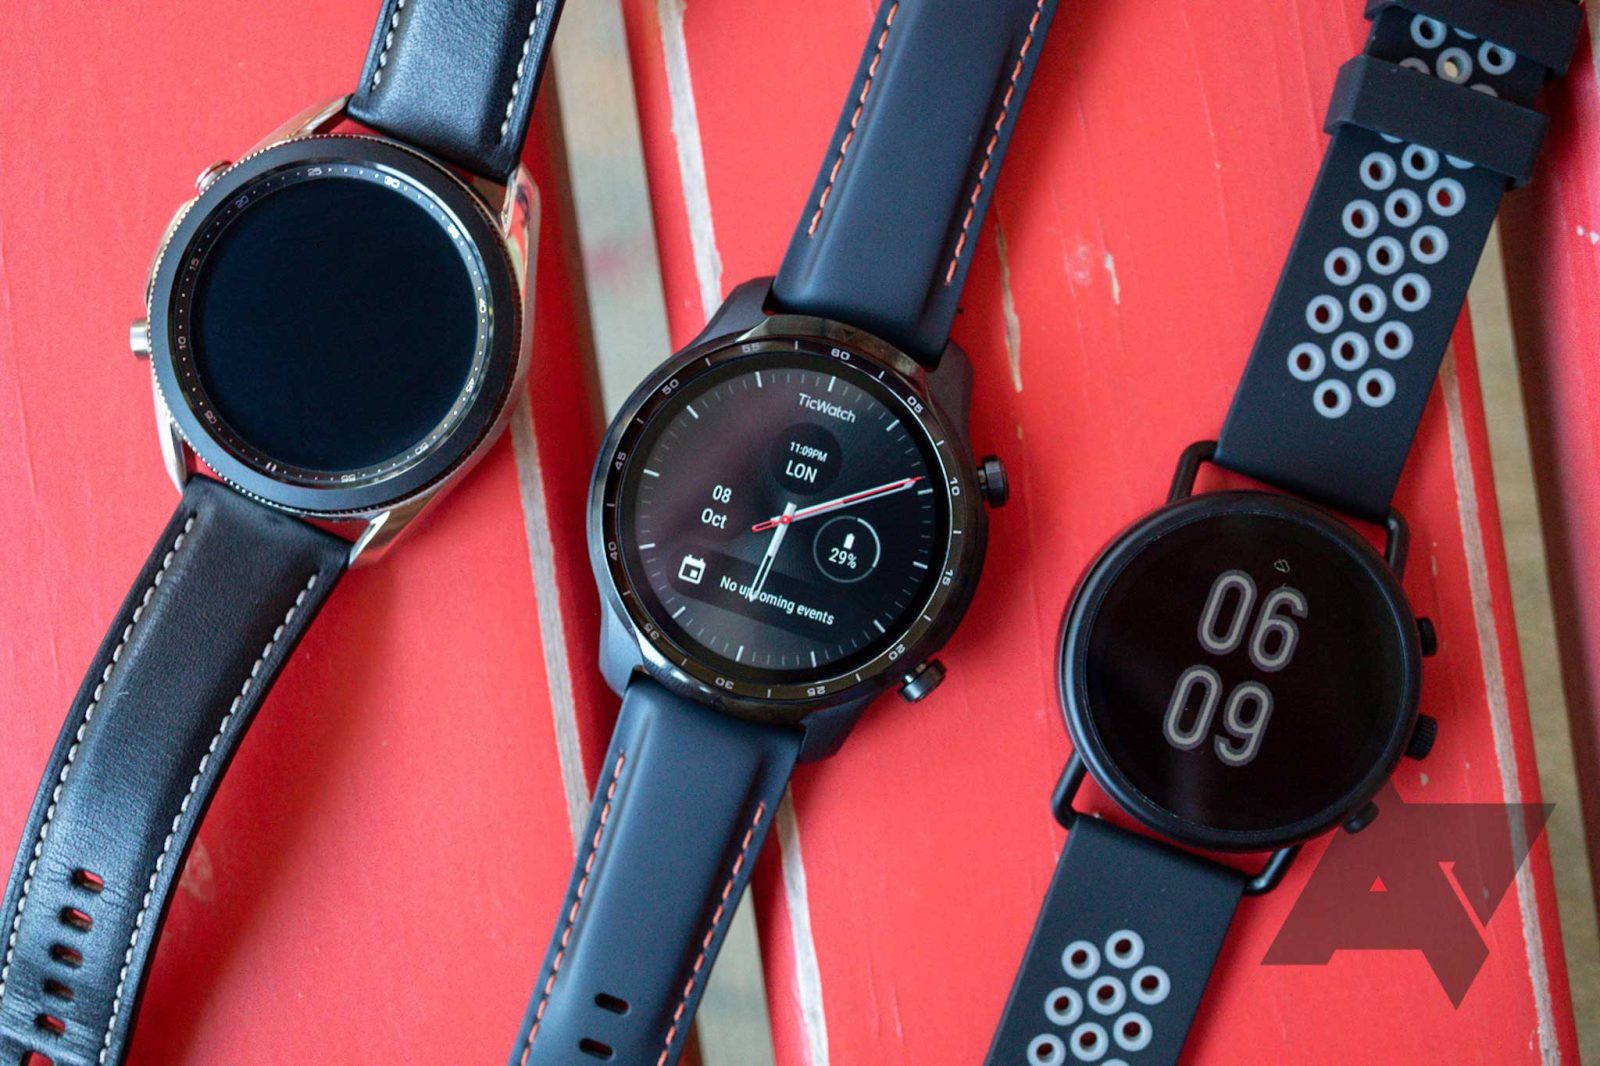 Google refuse de s'engager dans les mises à jour Wear OS de nouvelle génération pour les montres existantes